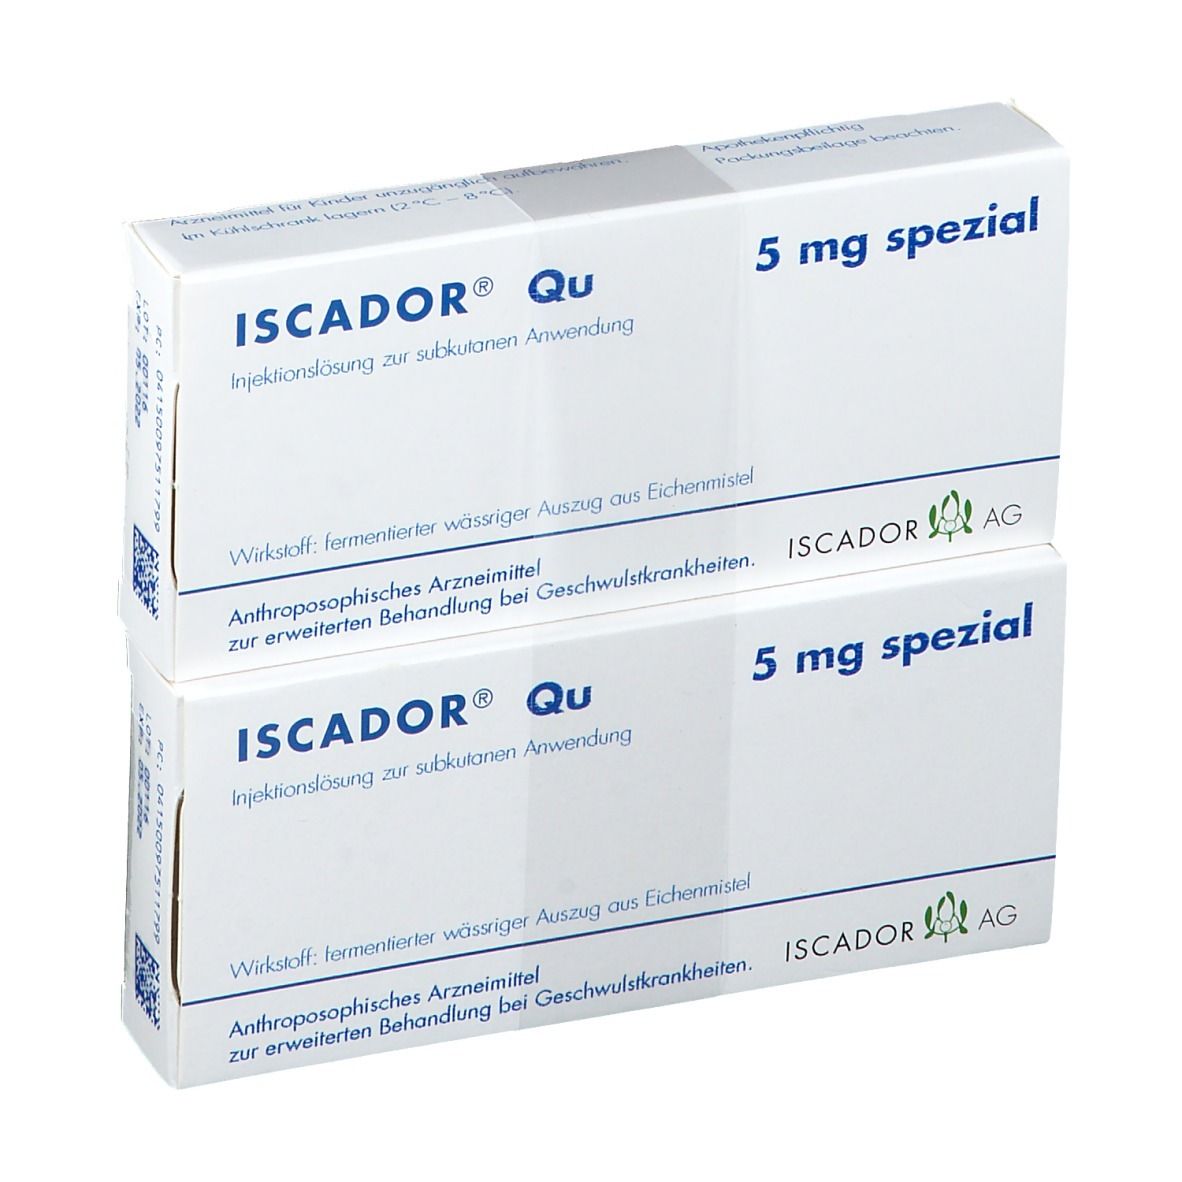 ISCADOR® Qu 5 mg Spezial